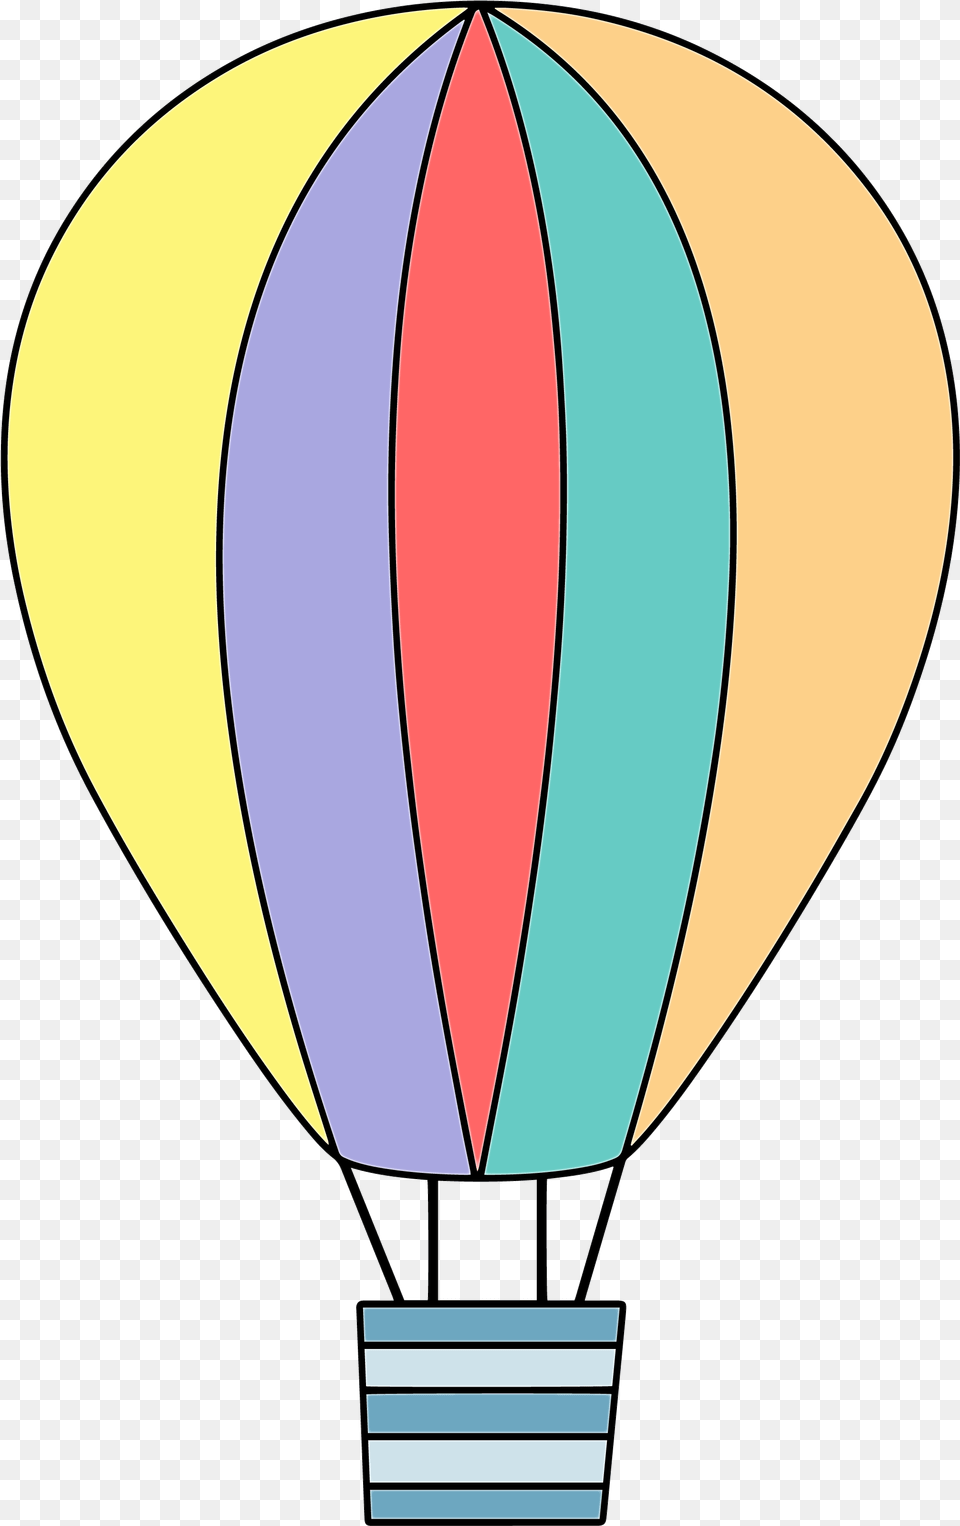 Hot Air Balloon Clipart Happy Birthday Hot Air Balloon, Aircraft, Transportation, Vehicle, Hot Air Balloon Free Png Download